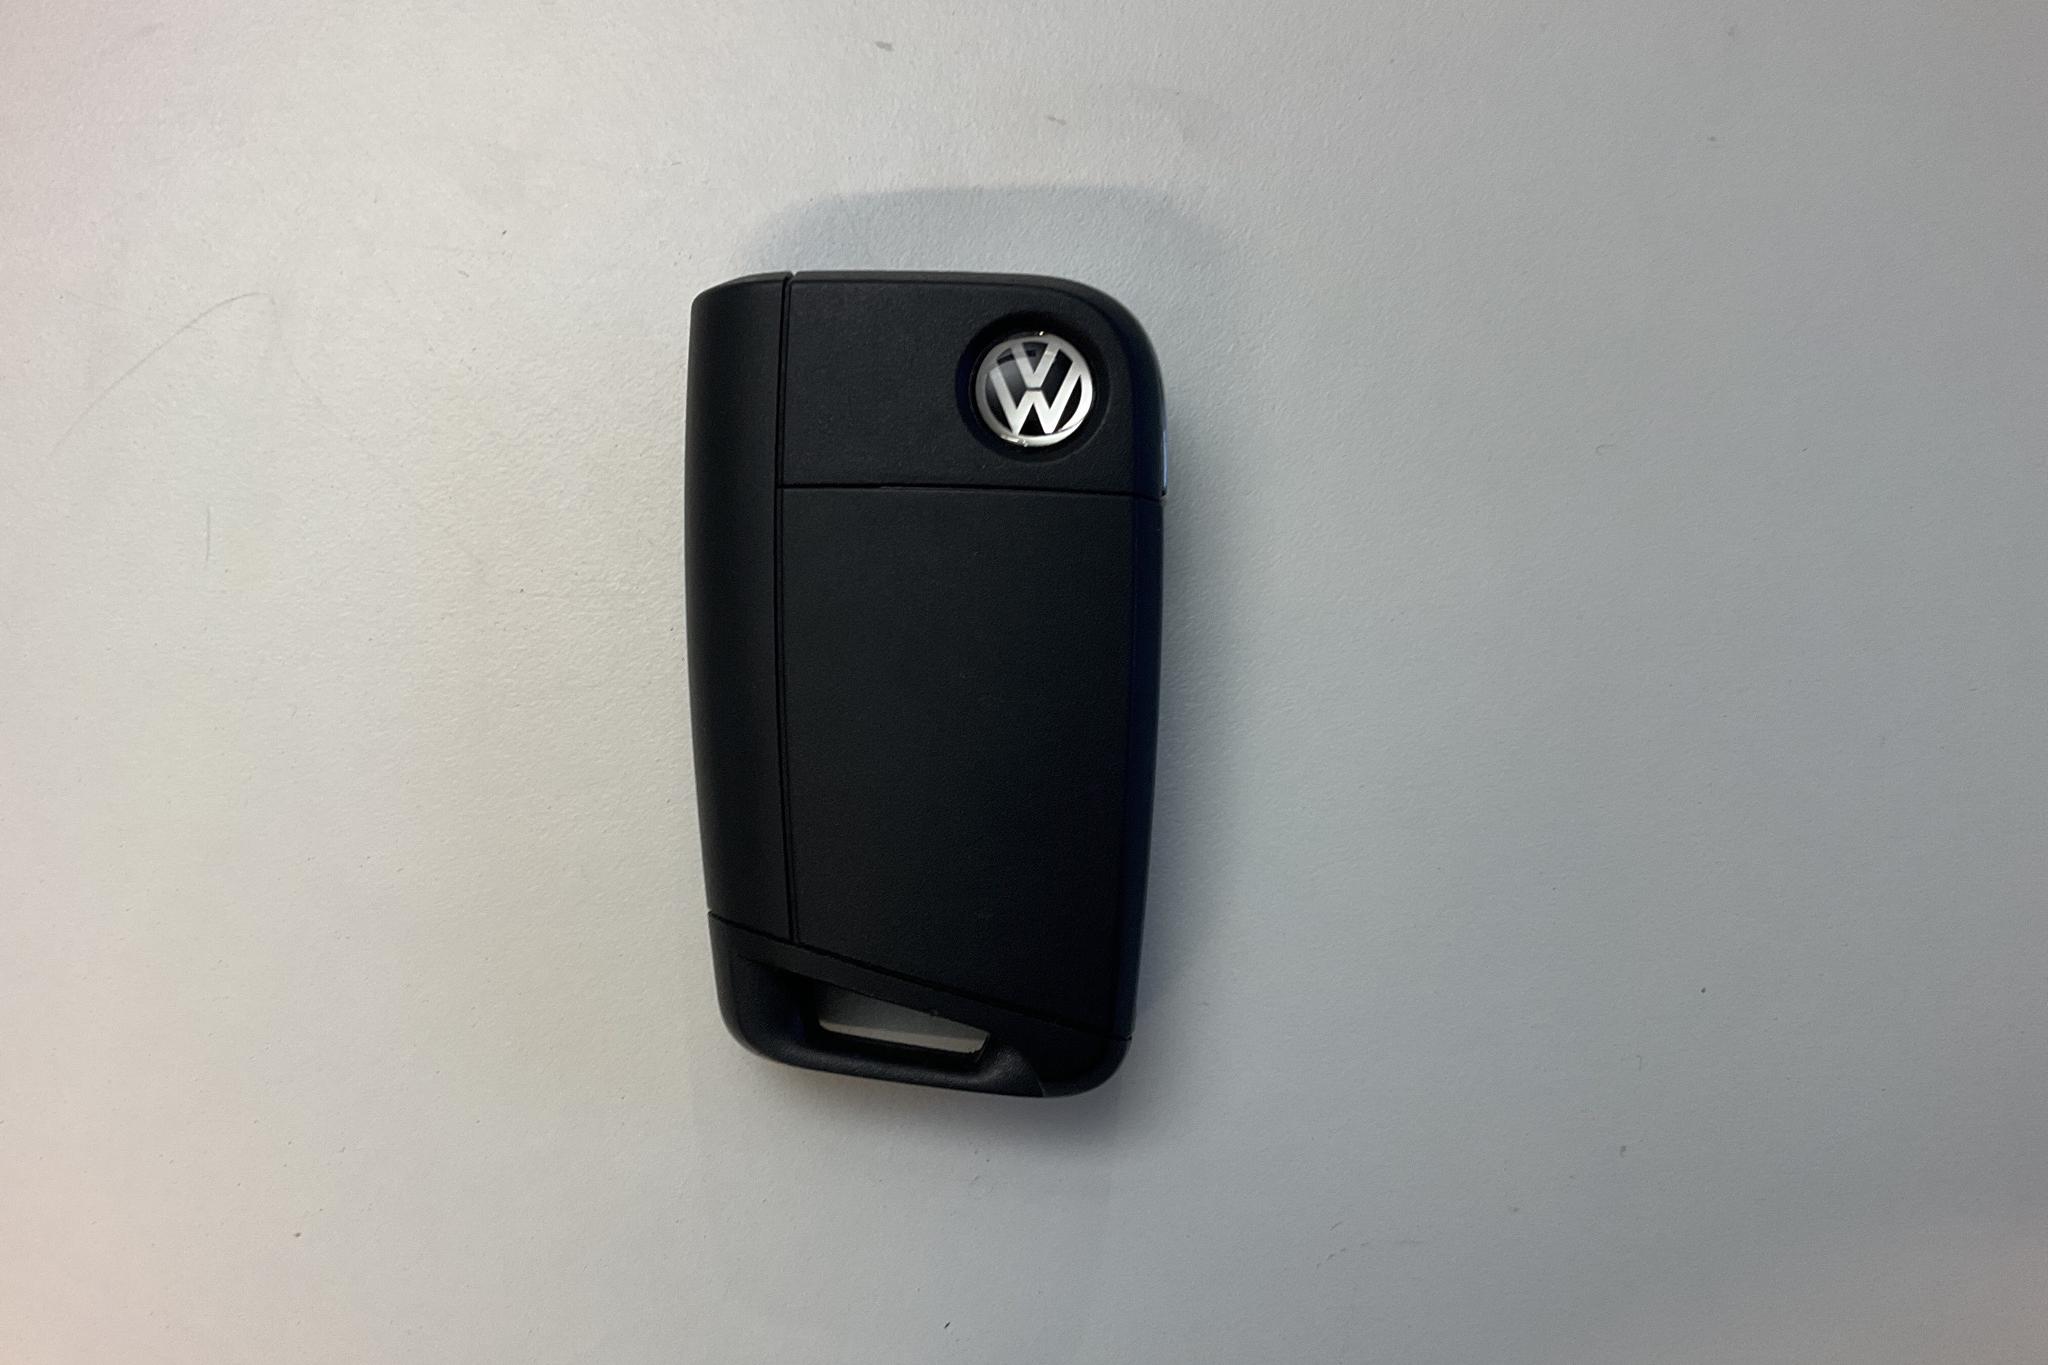 VW Polo 1.2 TSI 5dr (90hk) - 887 mil - Automat - svart - 2015